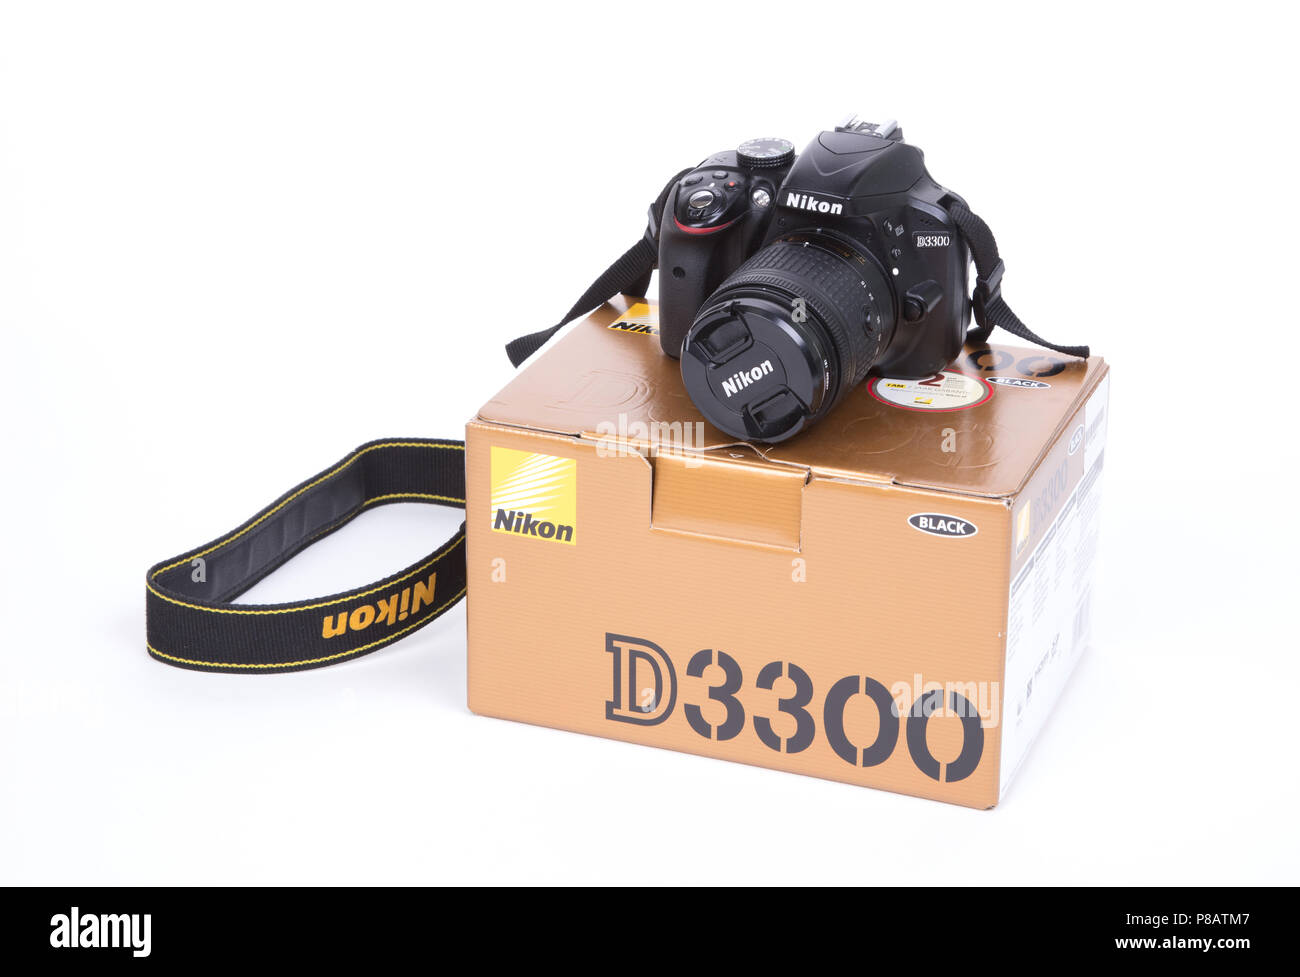 Leeuwarden, Paesi Bassi, 18 maggio 2018 - Nikon D3300 fotocamera con la scatola Foto Stock